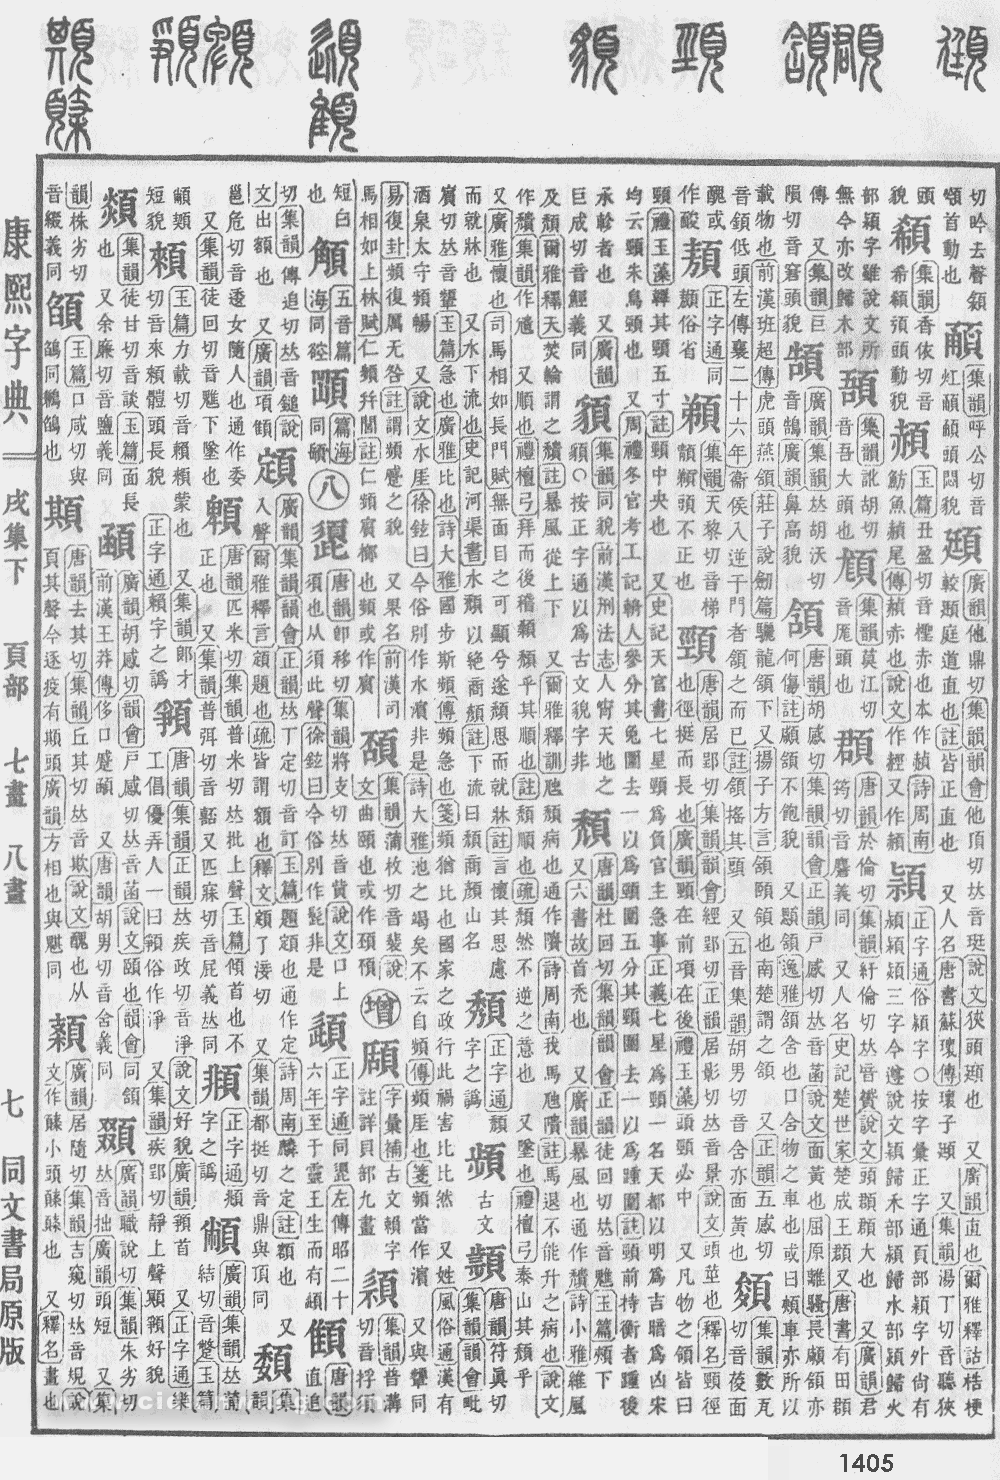 康熙字典掃描版第1405頁